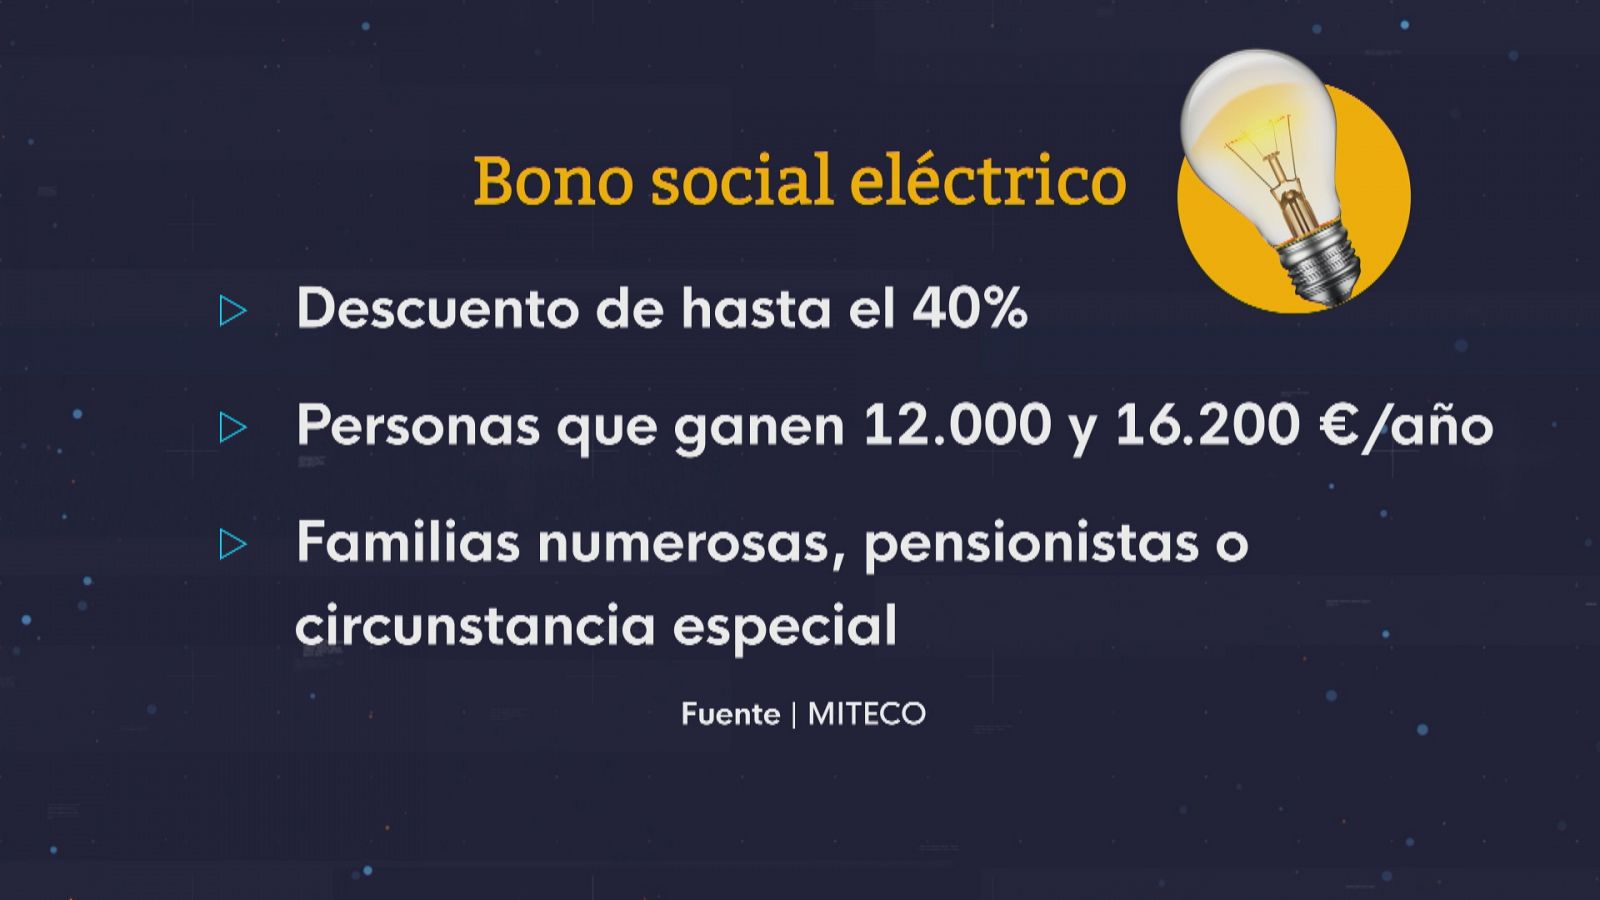 Bono social eléctrico - Ver ahora